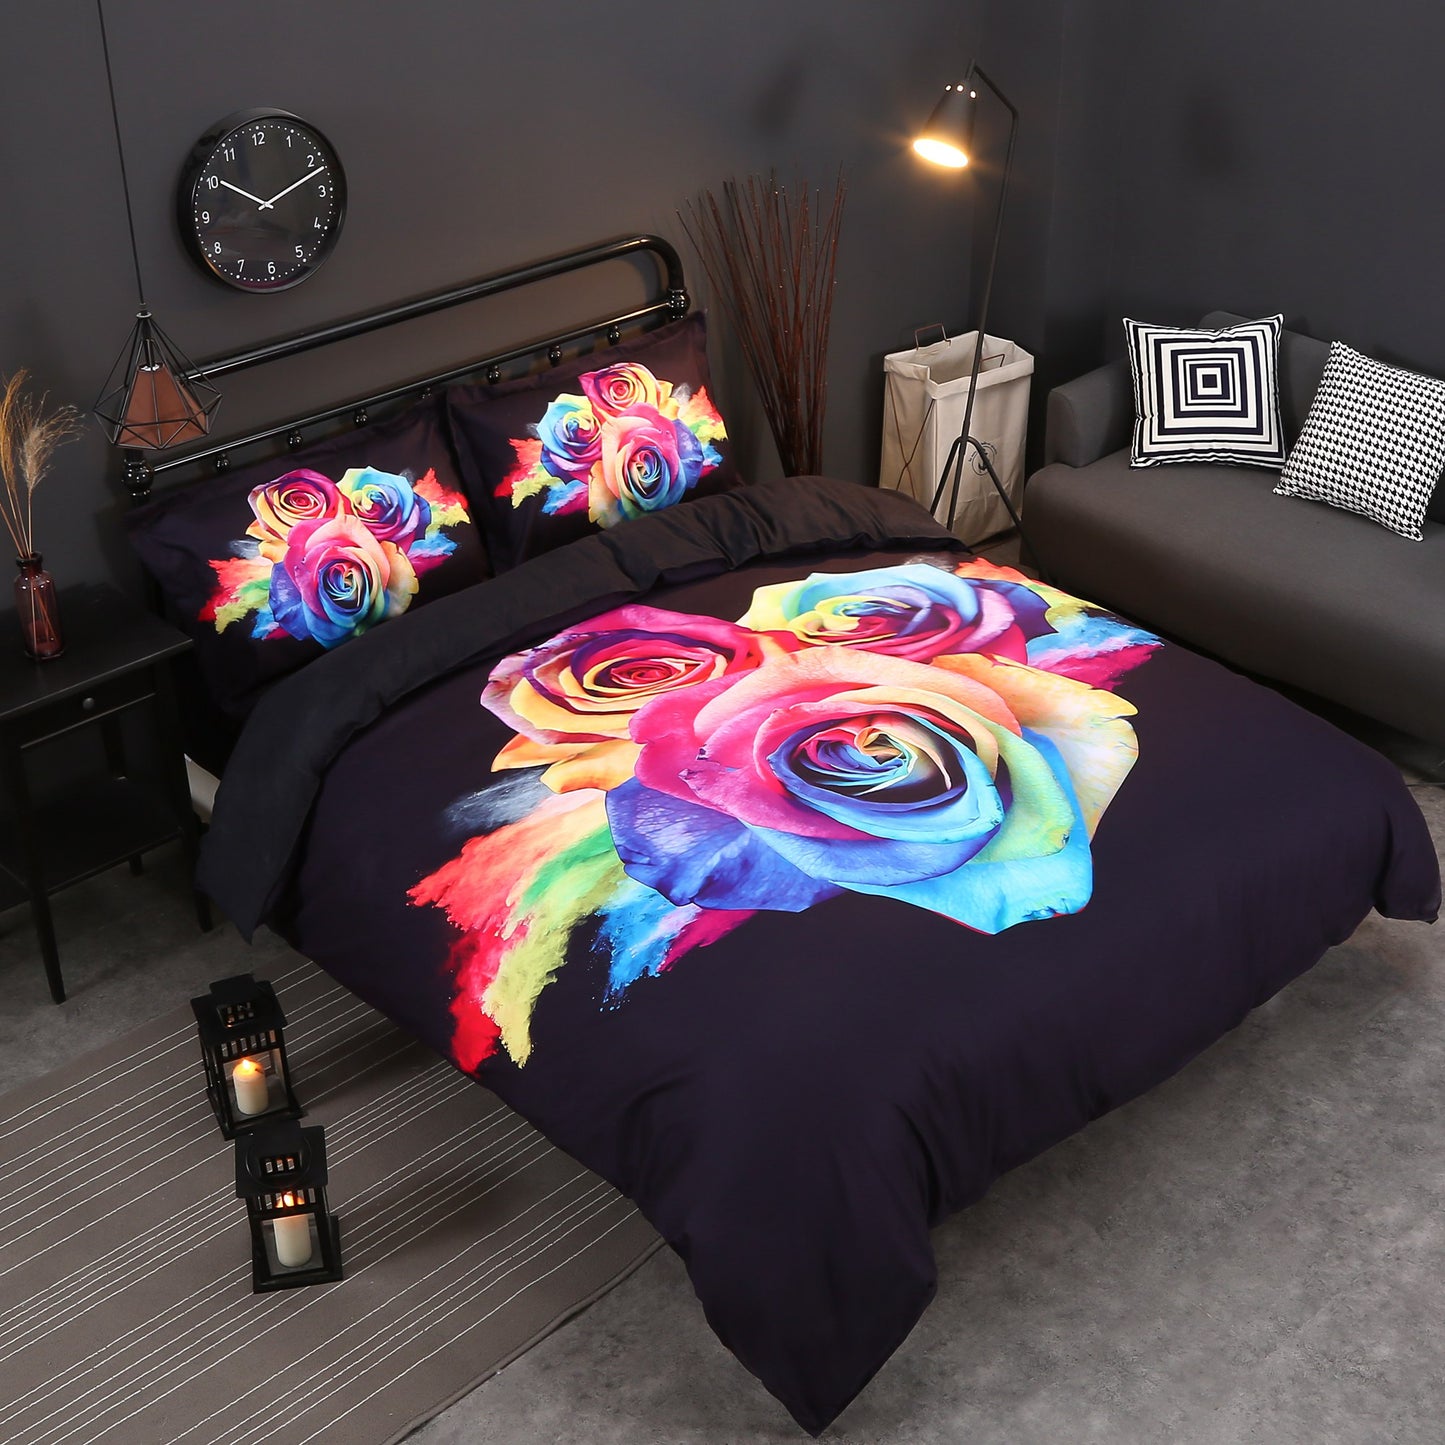 Juego de cama/funda nórdica de 4 piezas con diseño de rosas arcoíris en 3D, poliéster agradable para la piel, suave y duradero, color negro